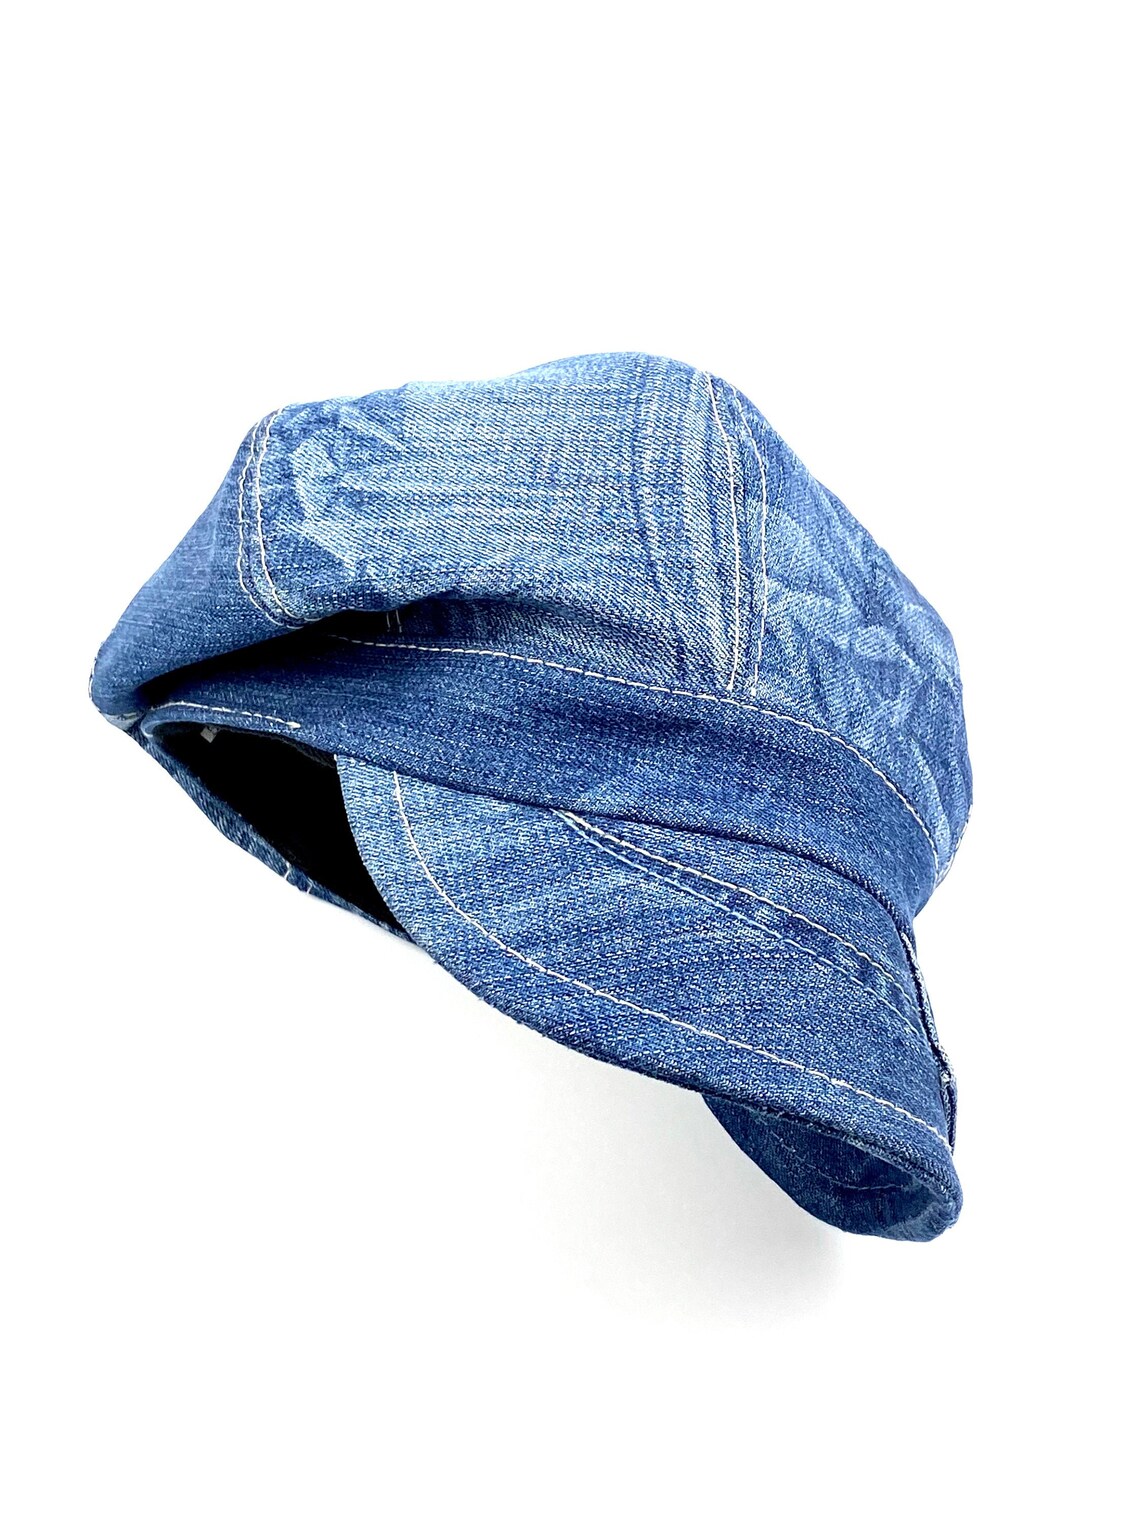 Newsboy Denim Hat Recycled Denim Cap Recycled Denim Hat | Etsy